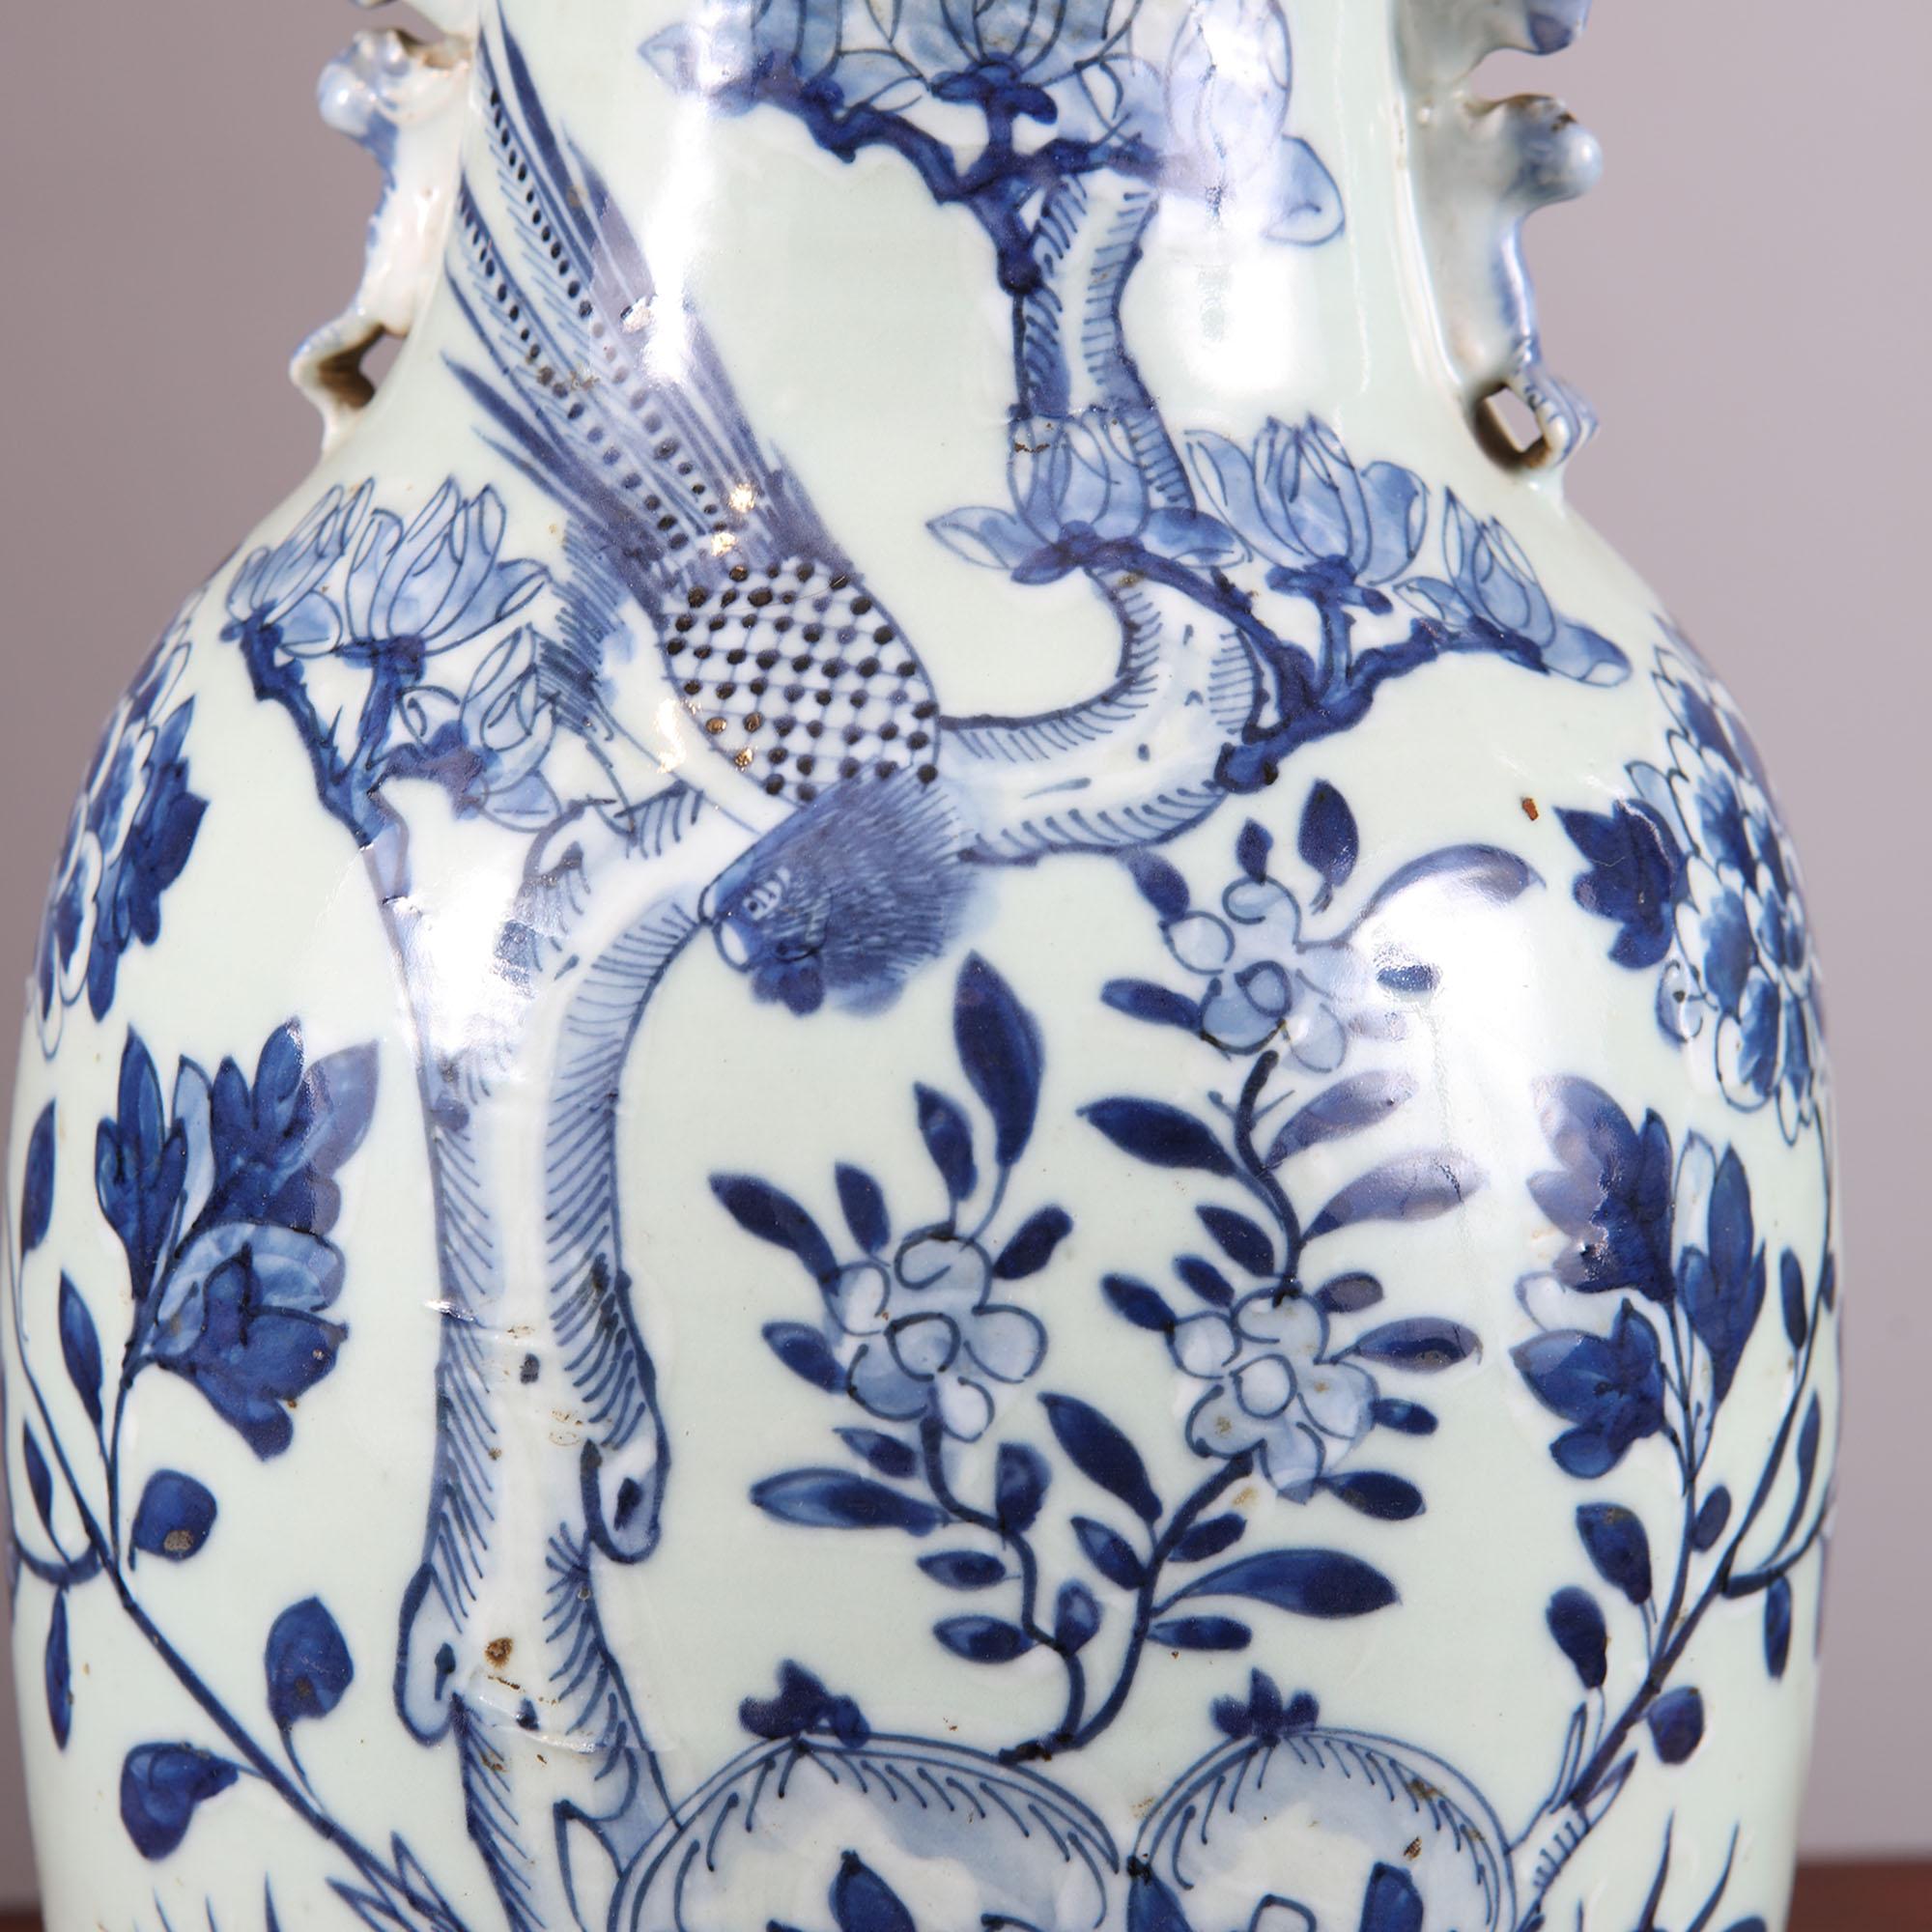 Paire de vases chinois bleu et blanc assortis, l'un décoré de scènes d'oiseaux parmi des feuillages, l'autre de vases et d'objets. Aujourd'hui montées comme lampes de table, chacune reposant sur des bases en bois tourné et munies de capuchons en